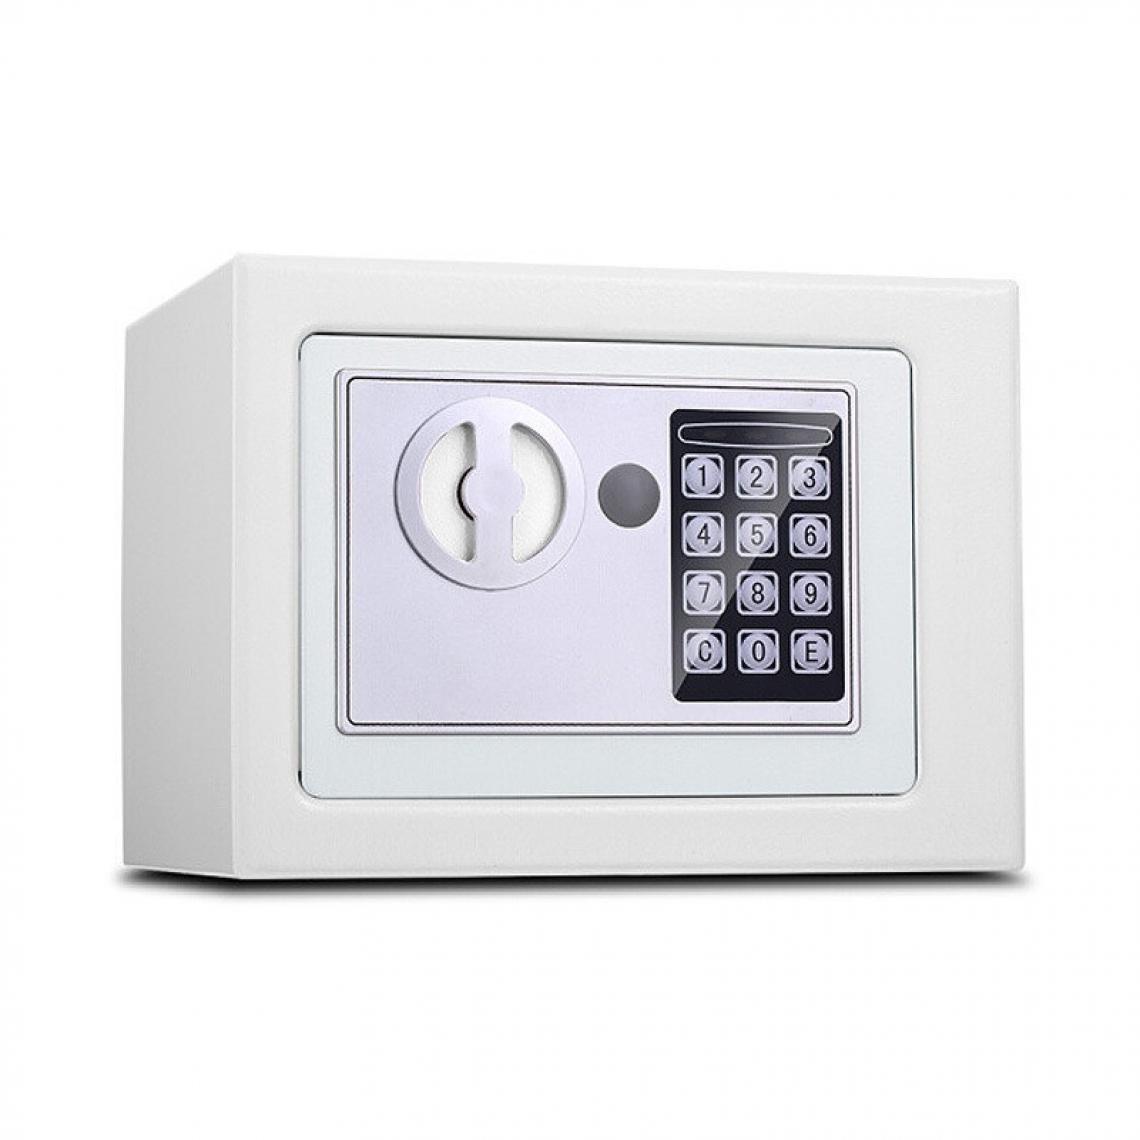 Wewoo - Coffre-fort 17E Home Mini armoire de sécurité avec de verrouillage électronique Boîte de fonction à prépaiement Blanc - Coffre fort